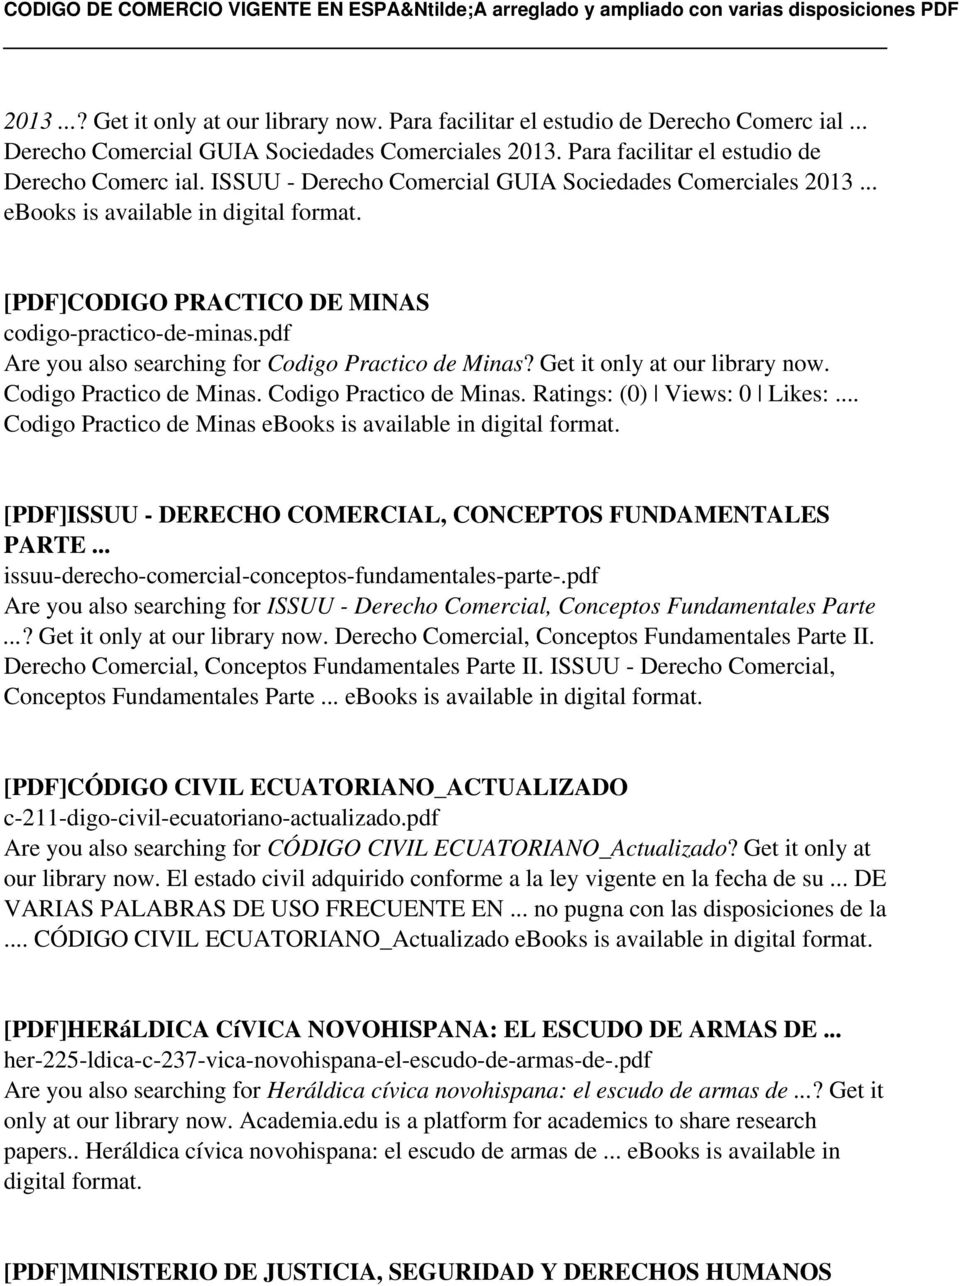 .. Codigo Practico de Minas ebooks is available in [PDF]ISSUU - DERECHO COMERCIAL, CONCEPTOS FUNDAMENTALES PARTE... issuu-derecho-comercial-conceptos-fundamentales-parte-.